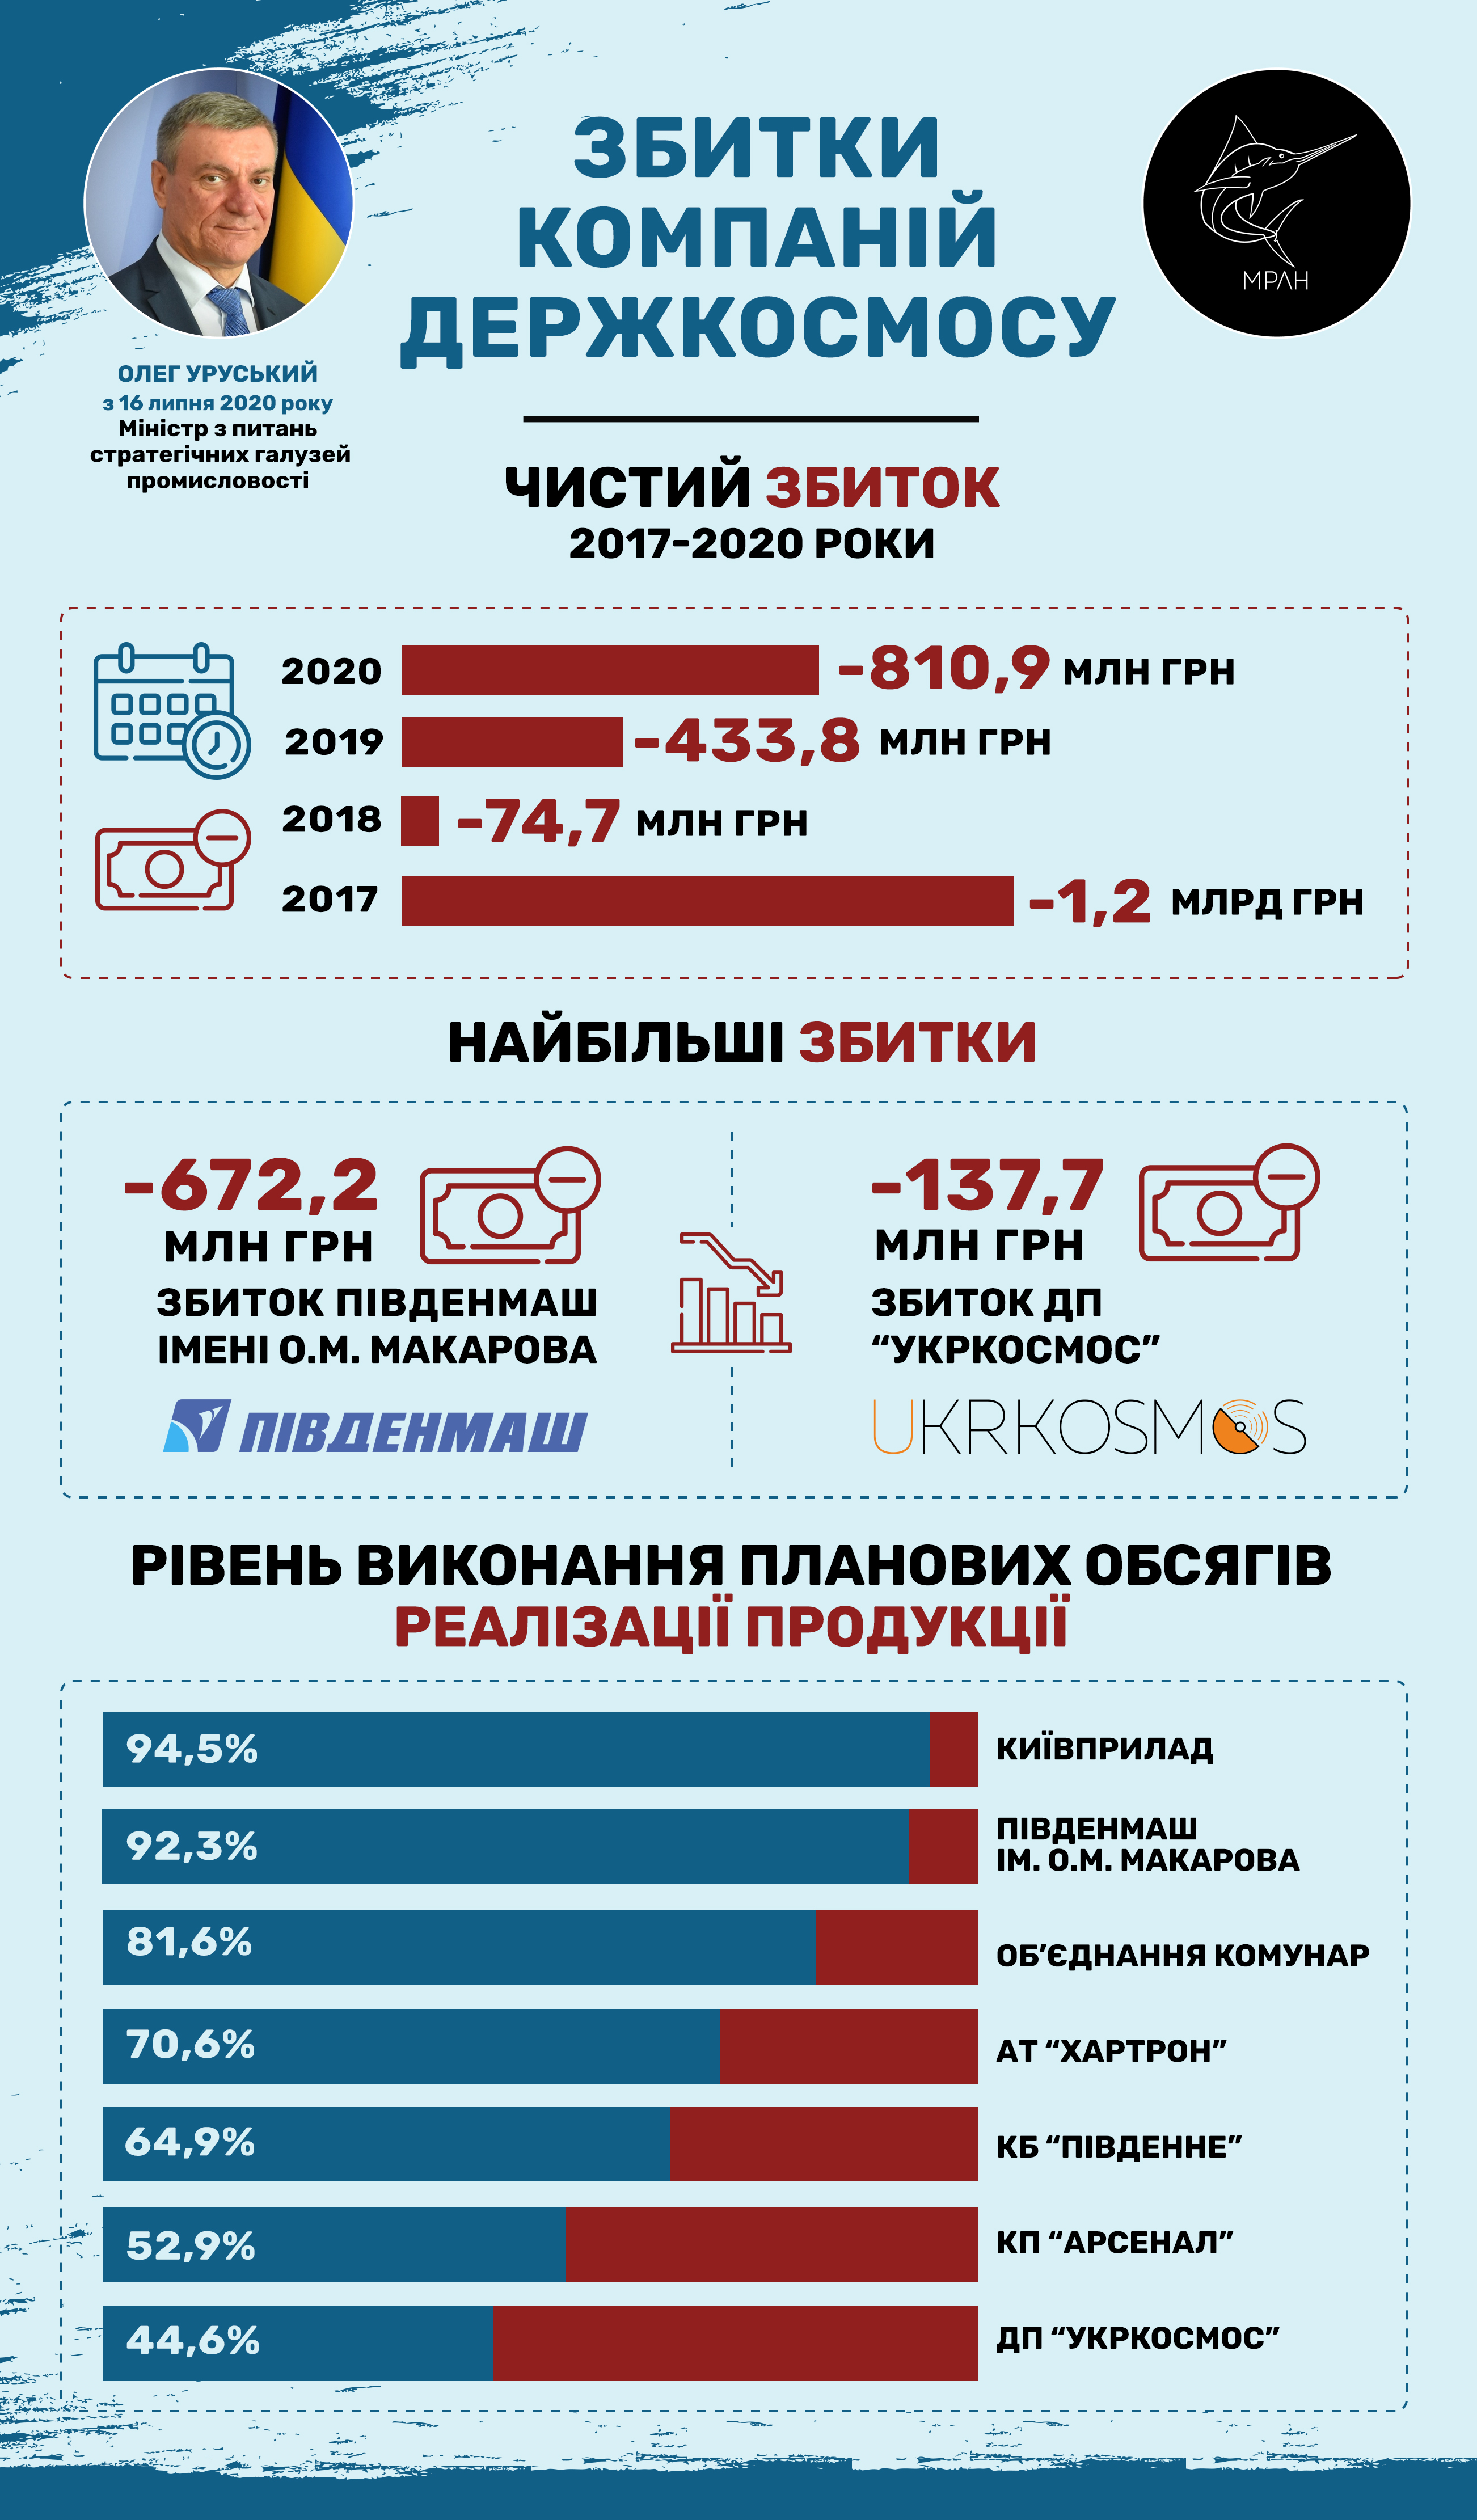 Финансовые показатели предприятий Госкосмоса 2020 года